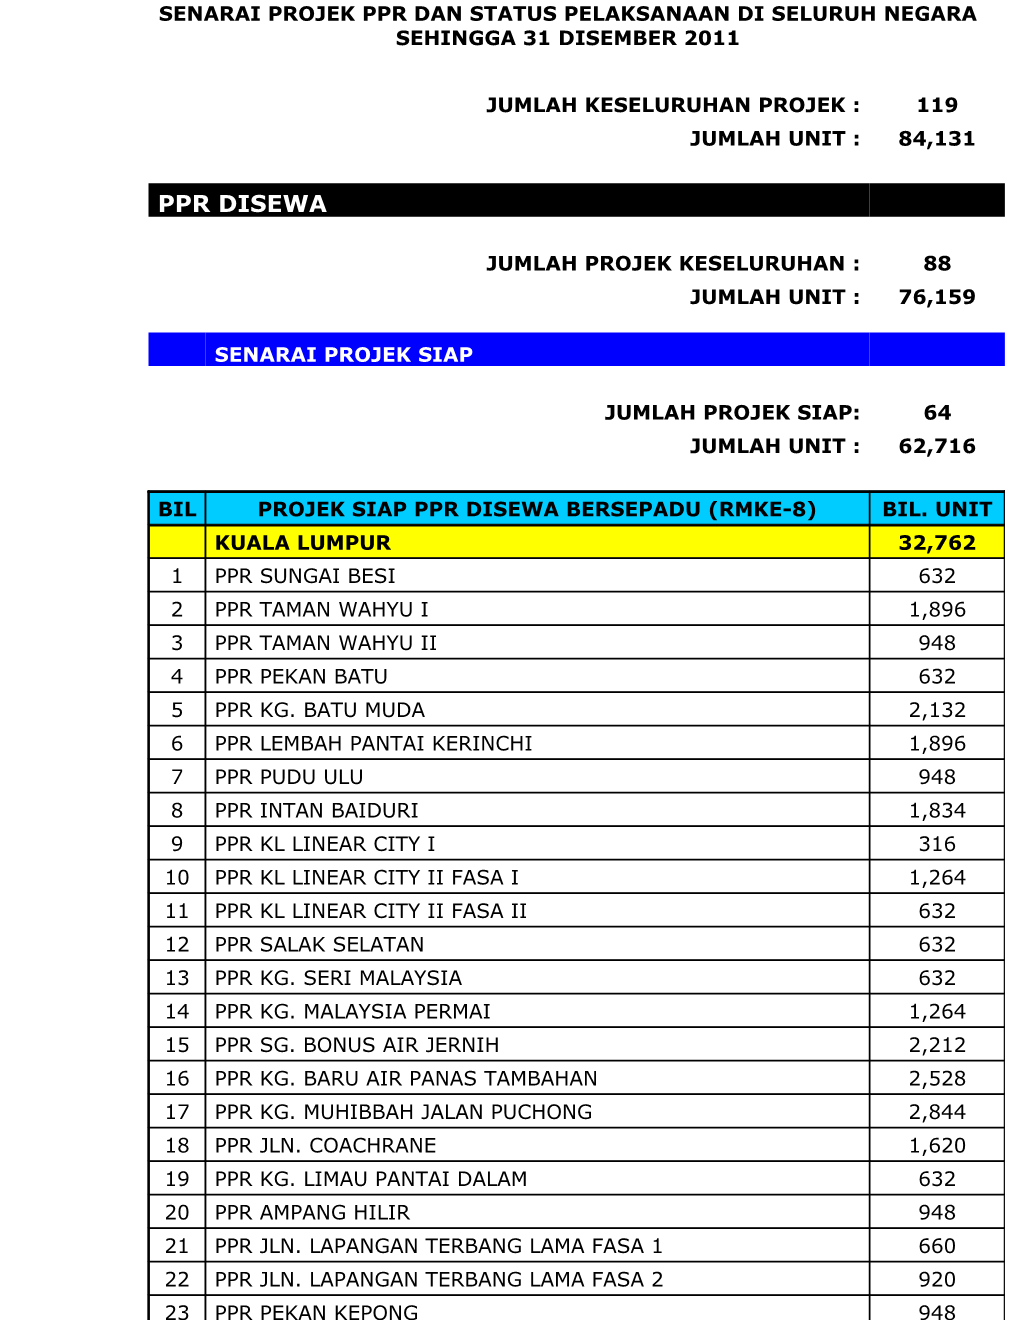 Senarai Projek Ppr Dan Status Pelaksanaan Di Seluruh Negara Sehingga 31 Disember 2011